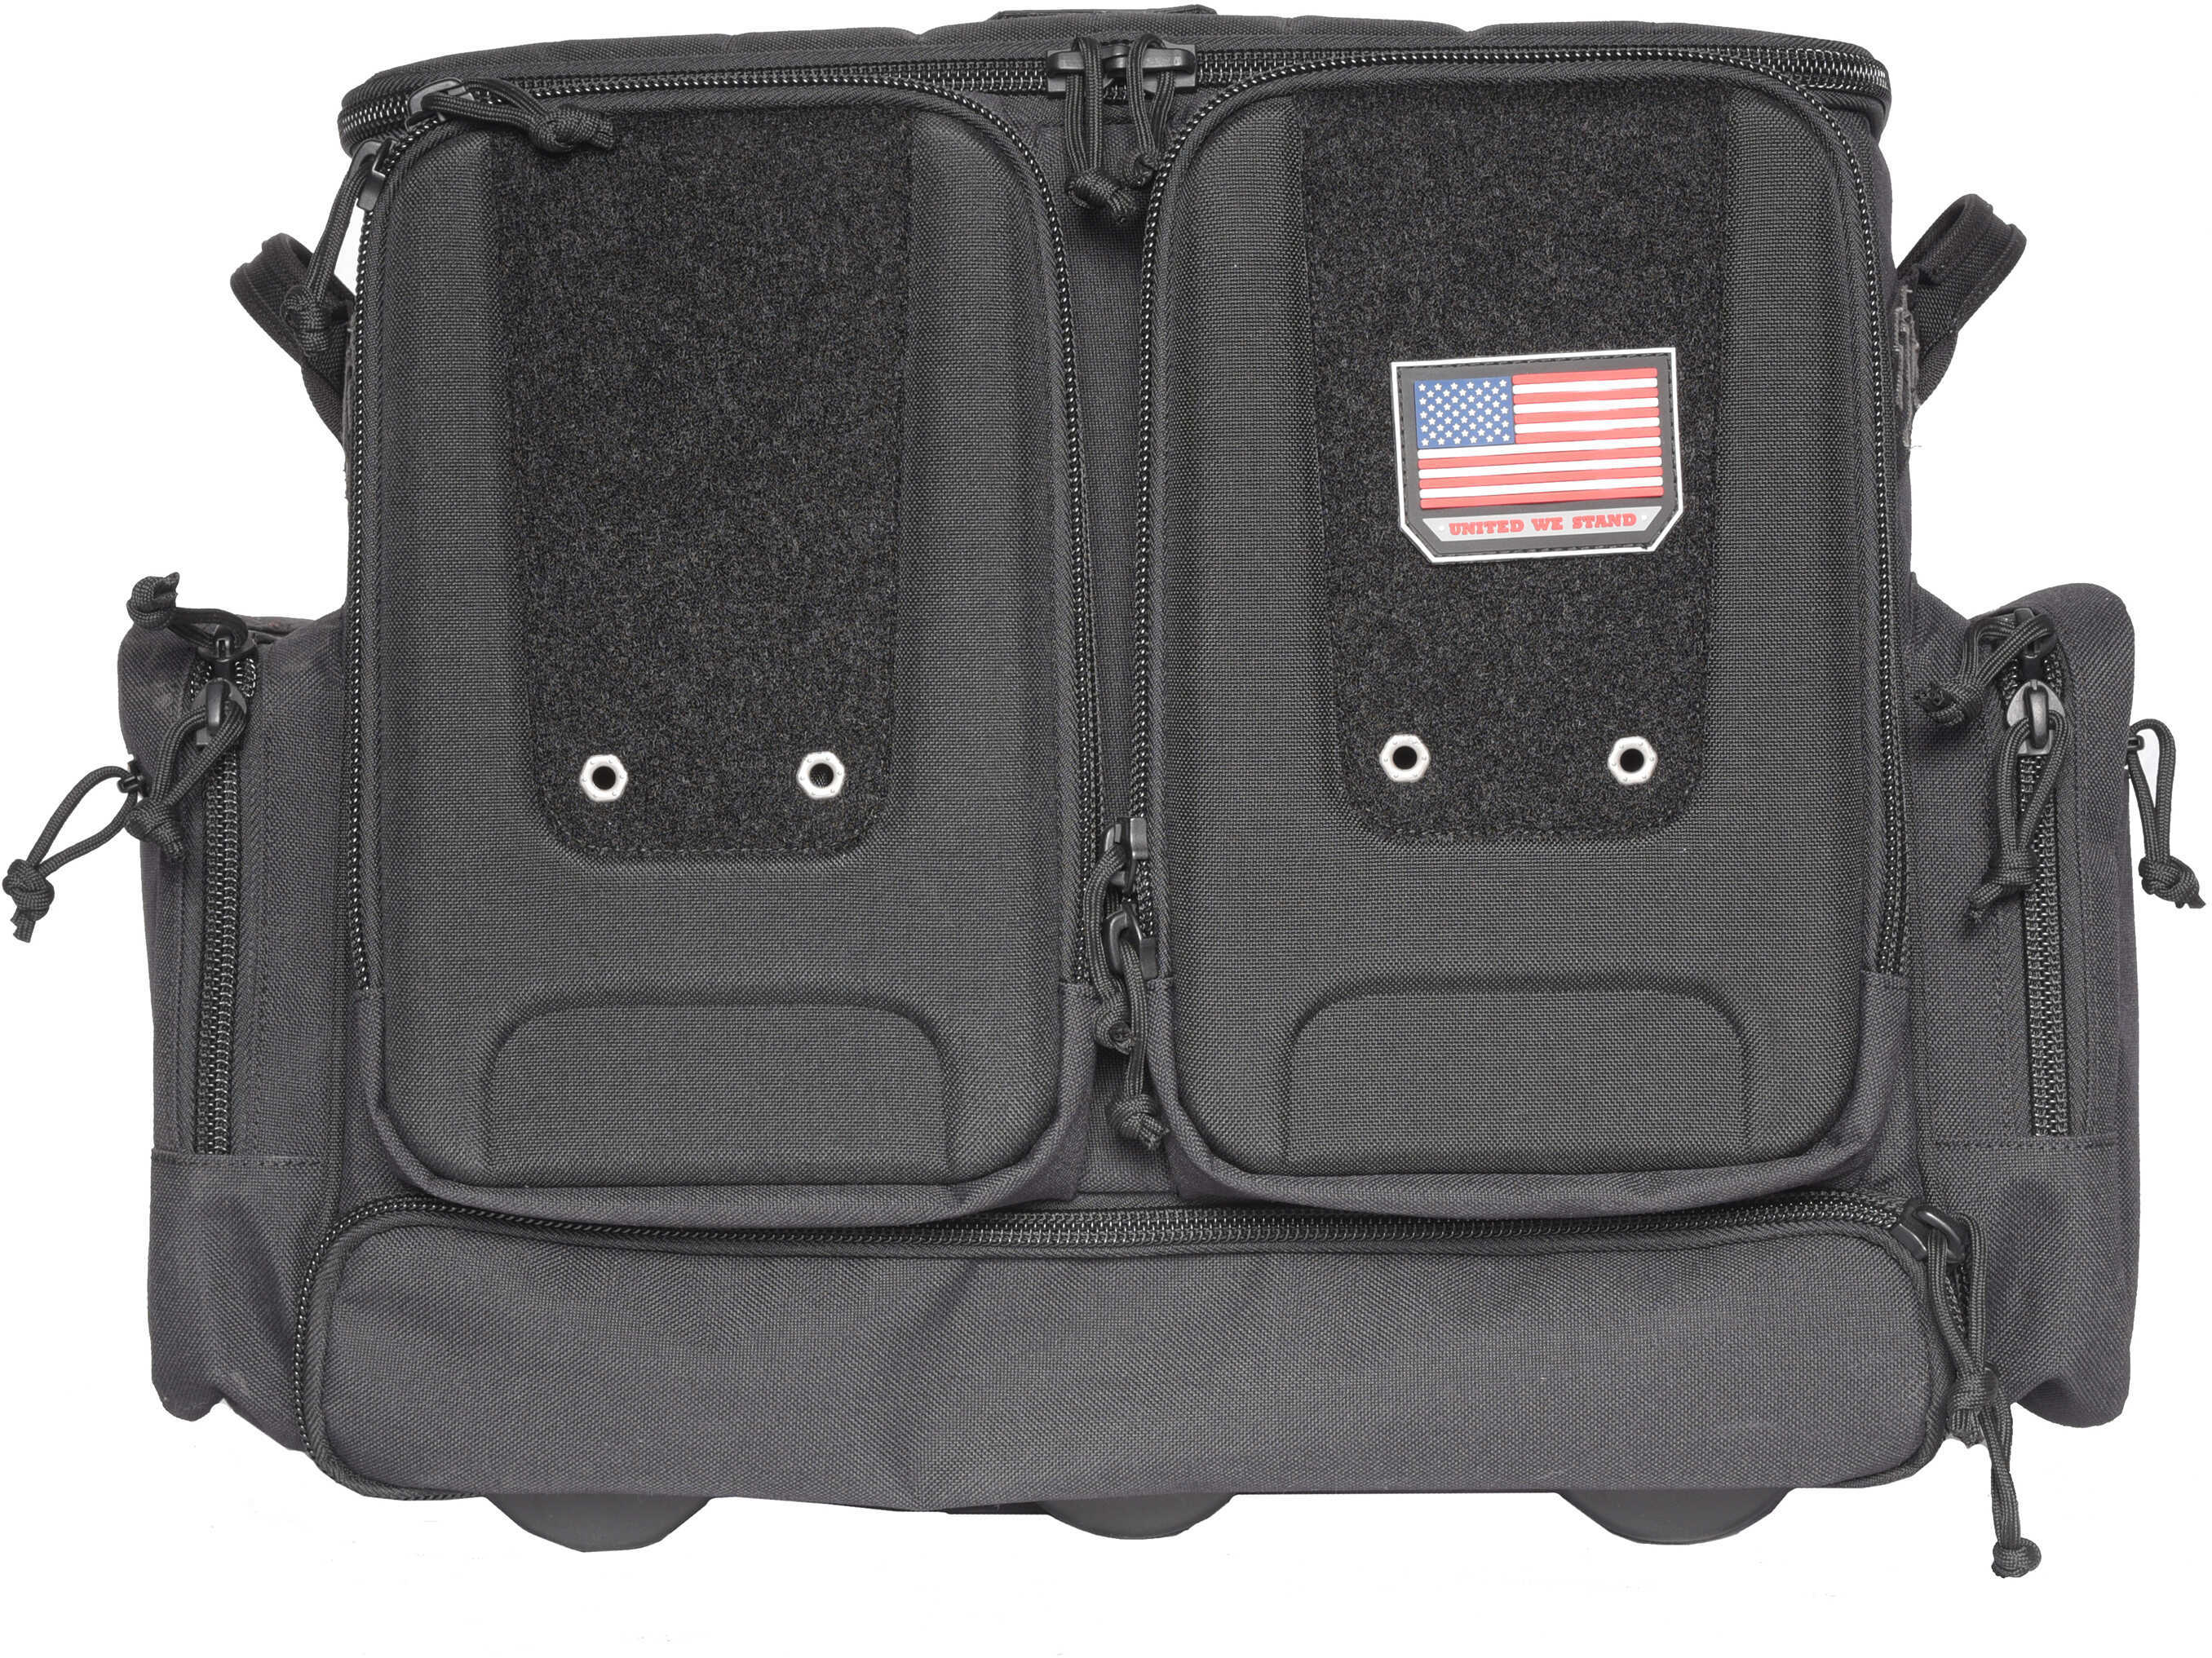 G-Outdoors Inc. Tactical Rolling Range Bag Black Soft Case Foam Cradle Holds 6 Pistols Internal Zipper Pocket 4